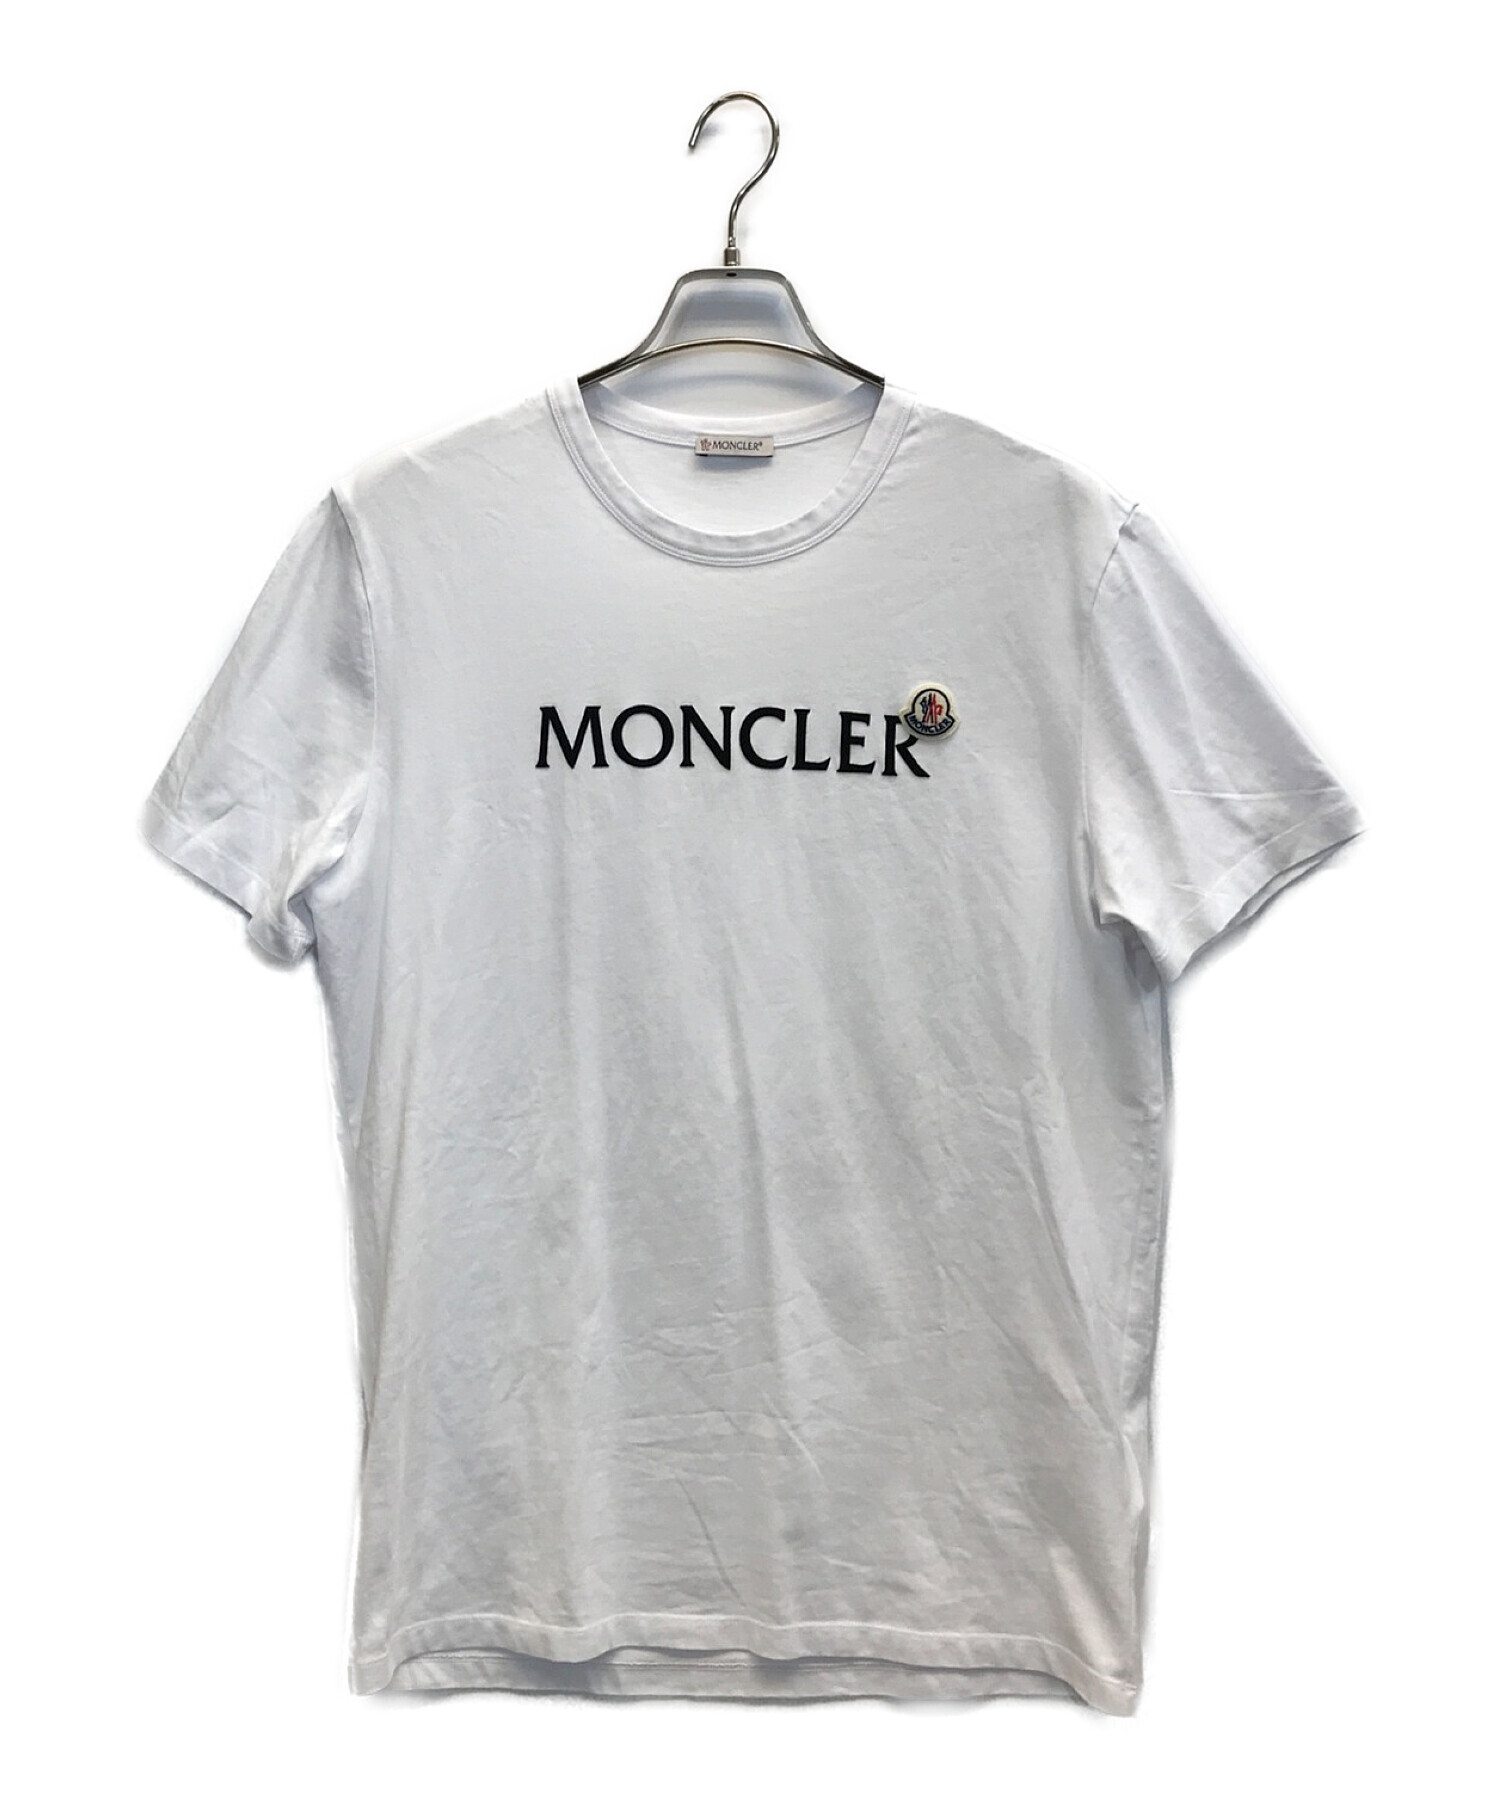 ブランド MONCLER フロントロゴプリントtシャツの通販 by TK